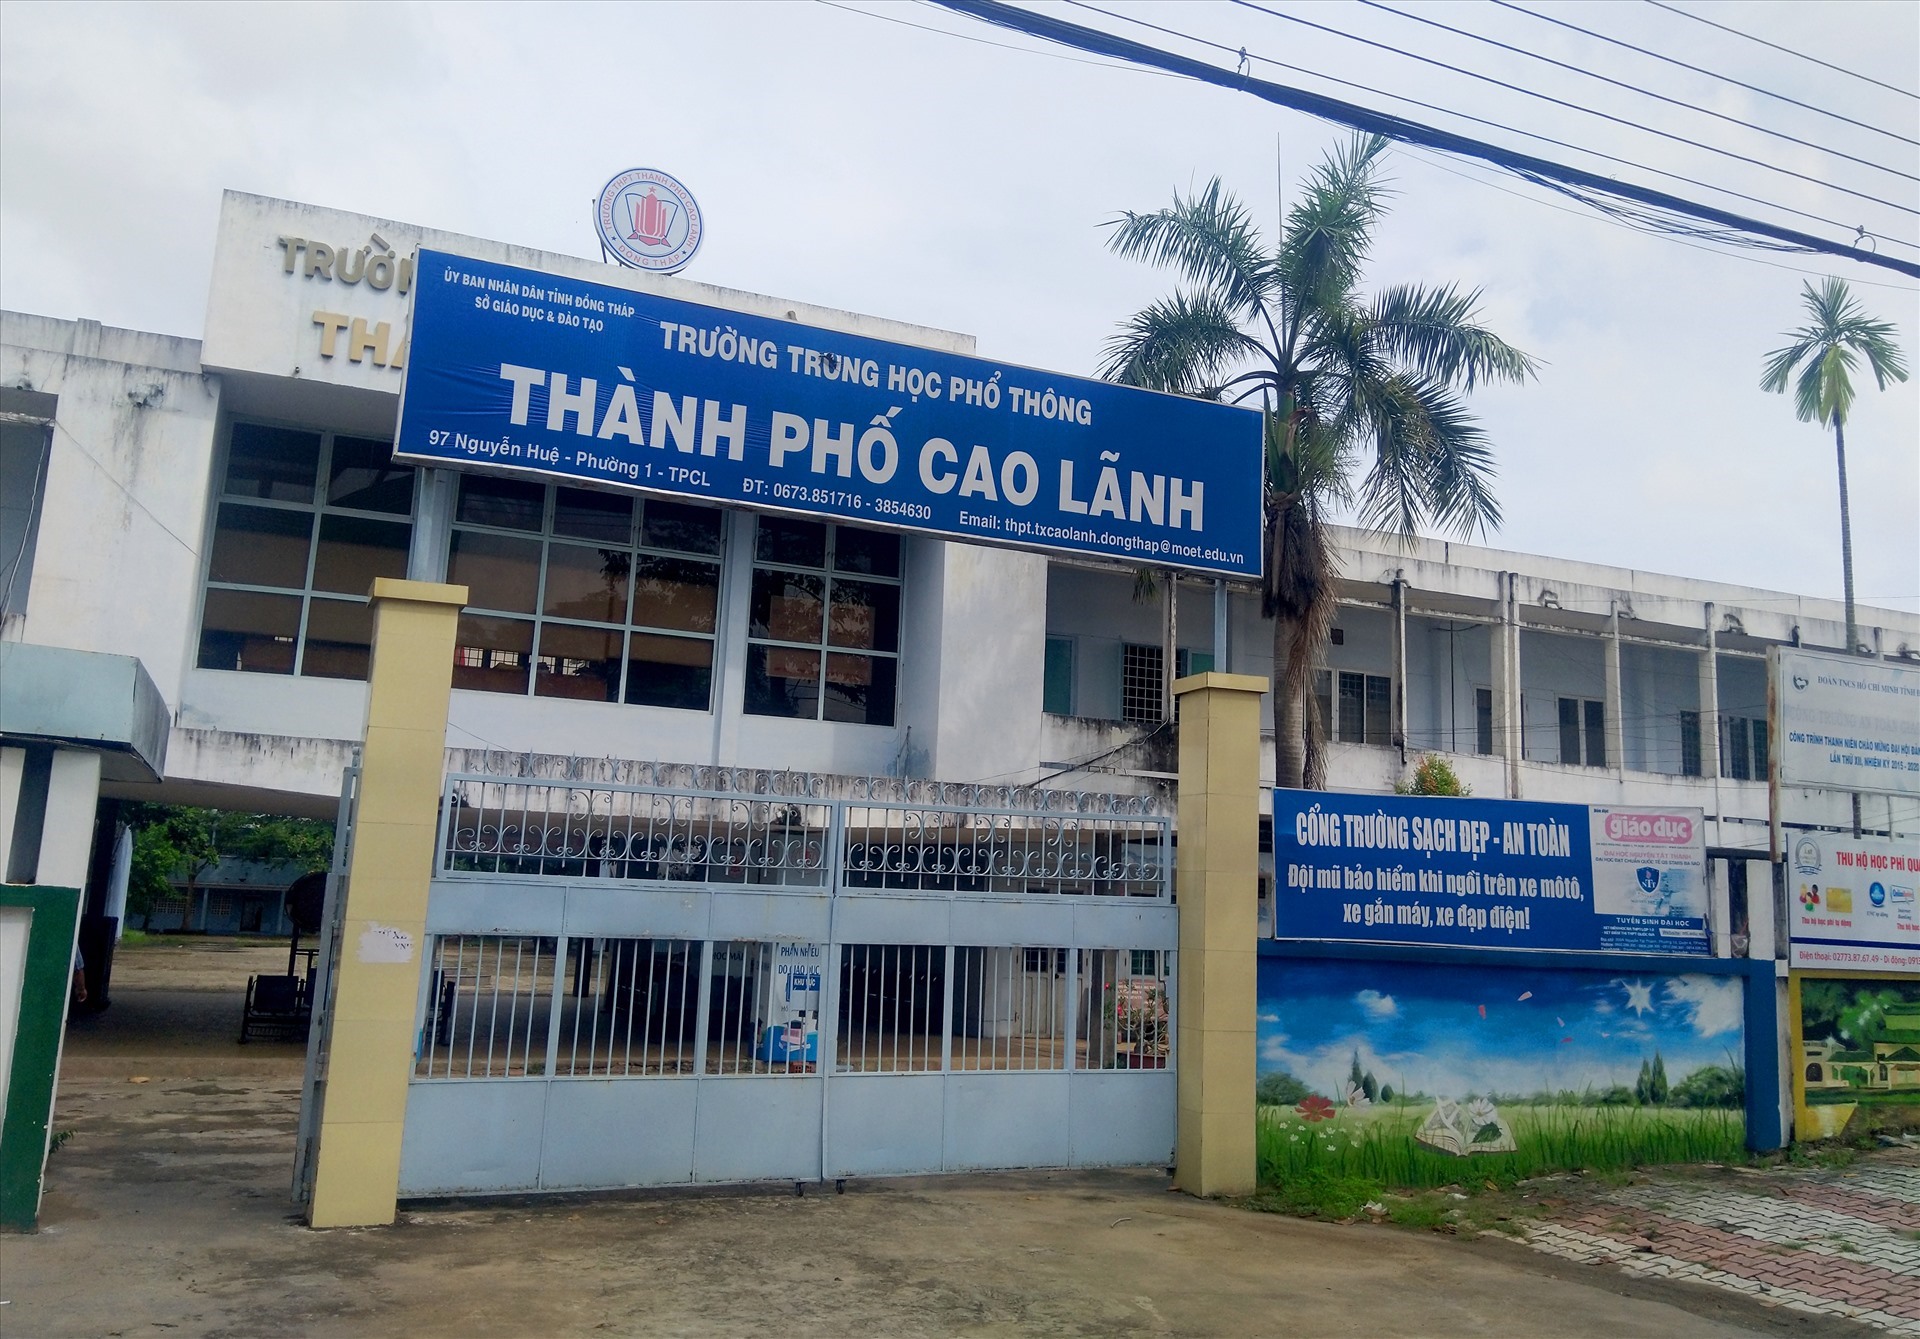 Trường PTTH Thành phố Cao Lãnh, tỉnh Đồng Tháp. Ảnh: LT